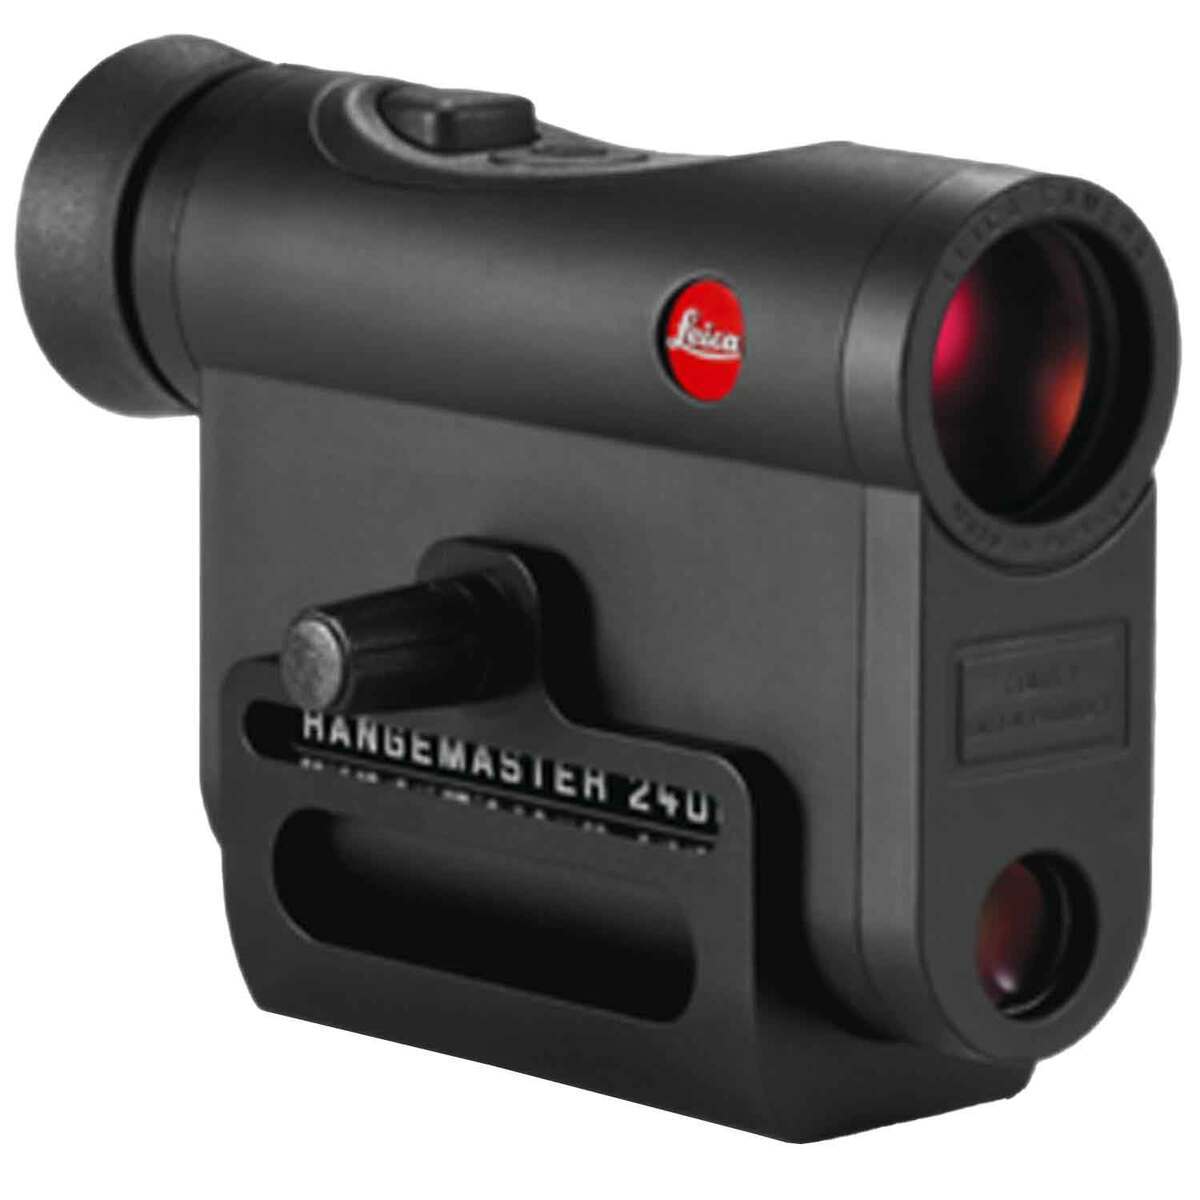 Leica Compact Rangemaster 1200 Yards Scan Mode Laser